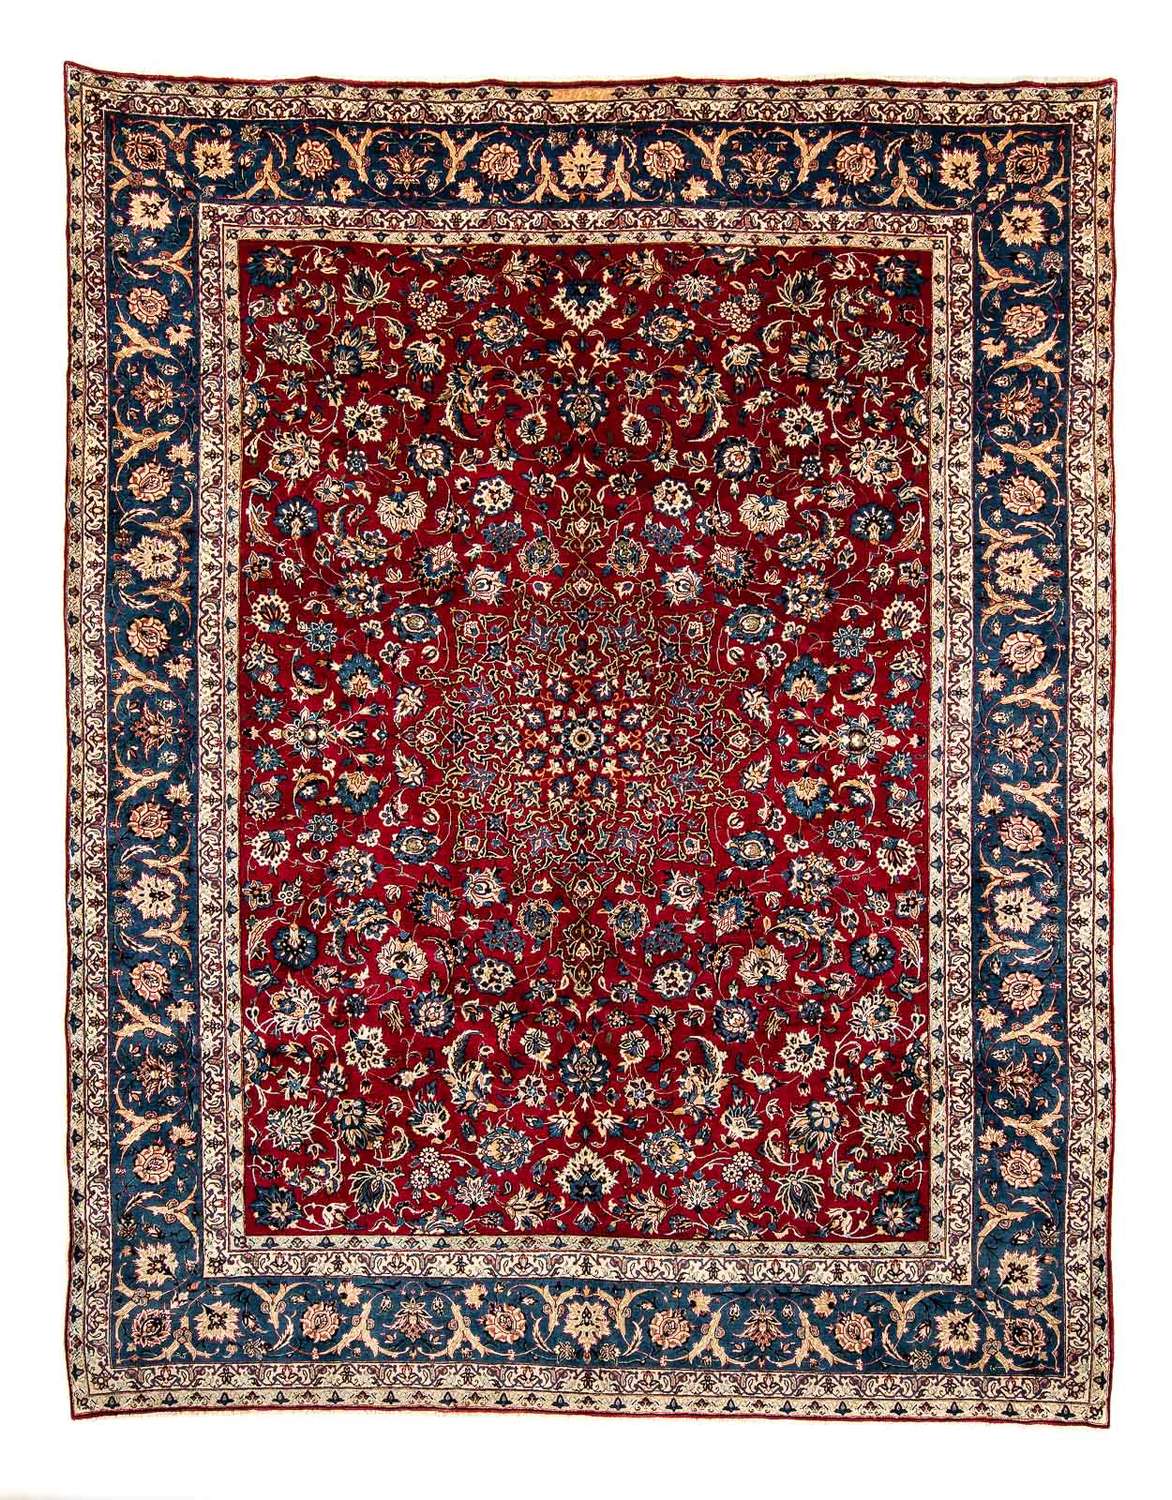 Tapis persan - Classique - 380 x 307 cm - rouge foncé